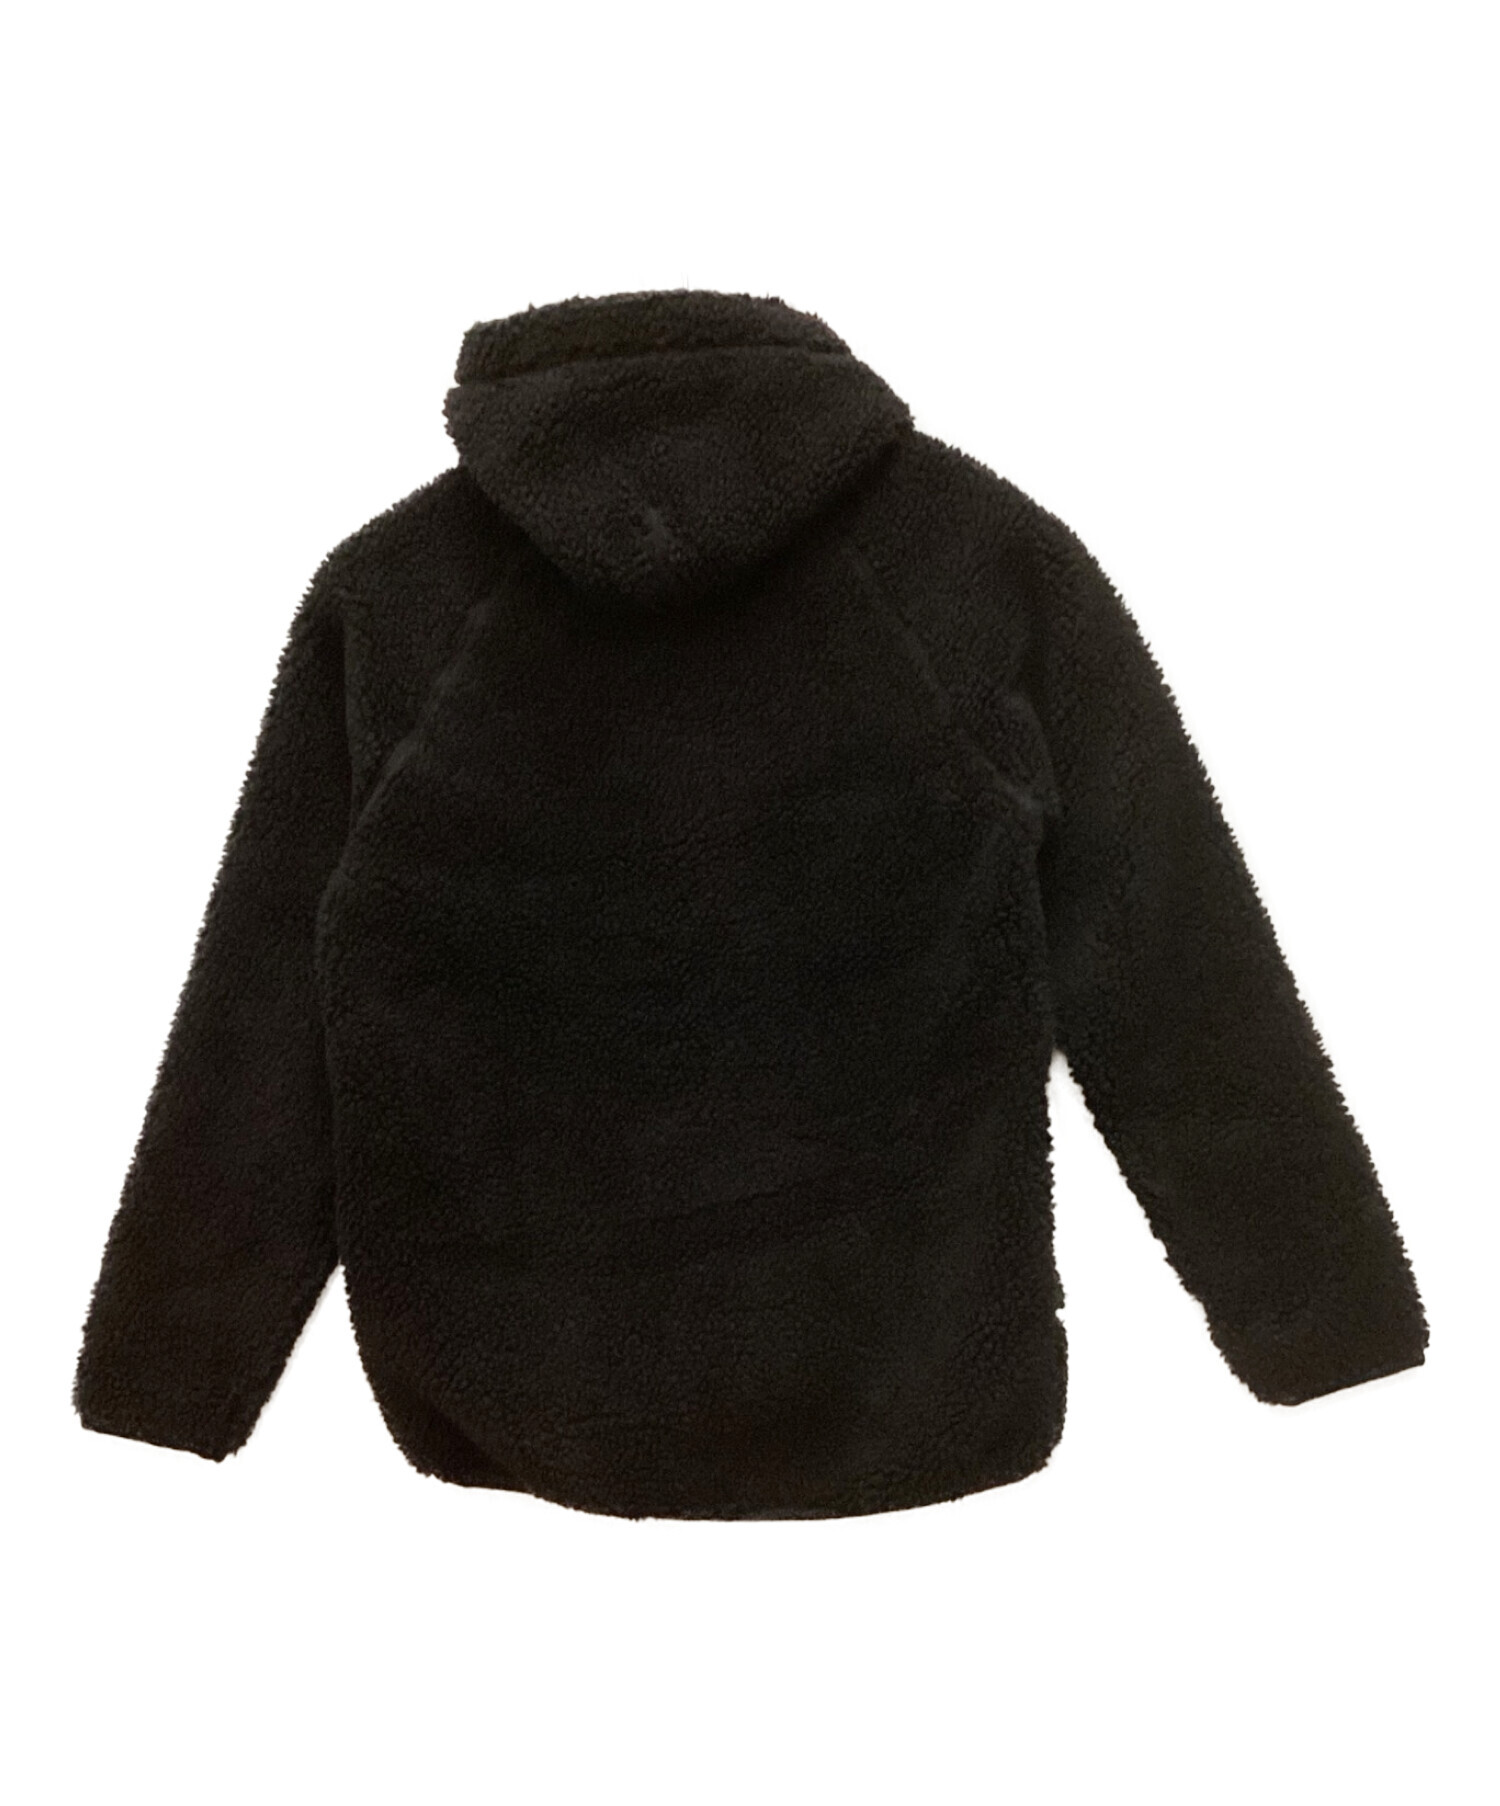 Gymphlex (ジムフレックス) ボアフリースジャケット ブラック サイズ:M